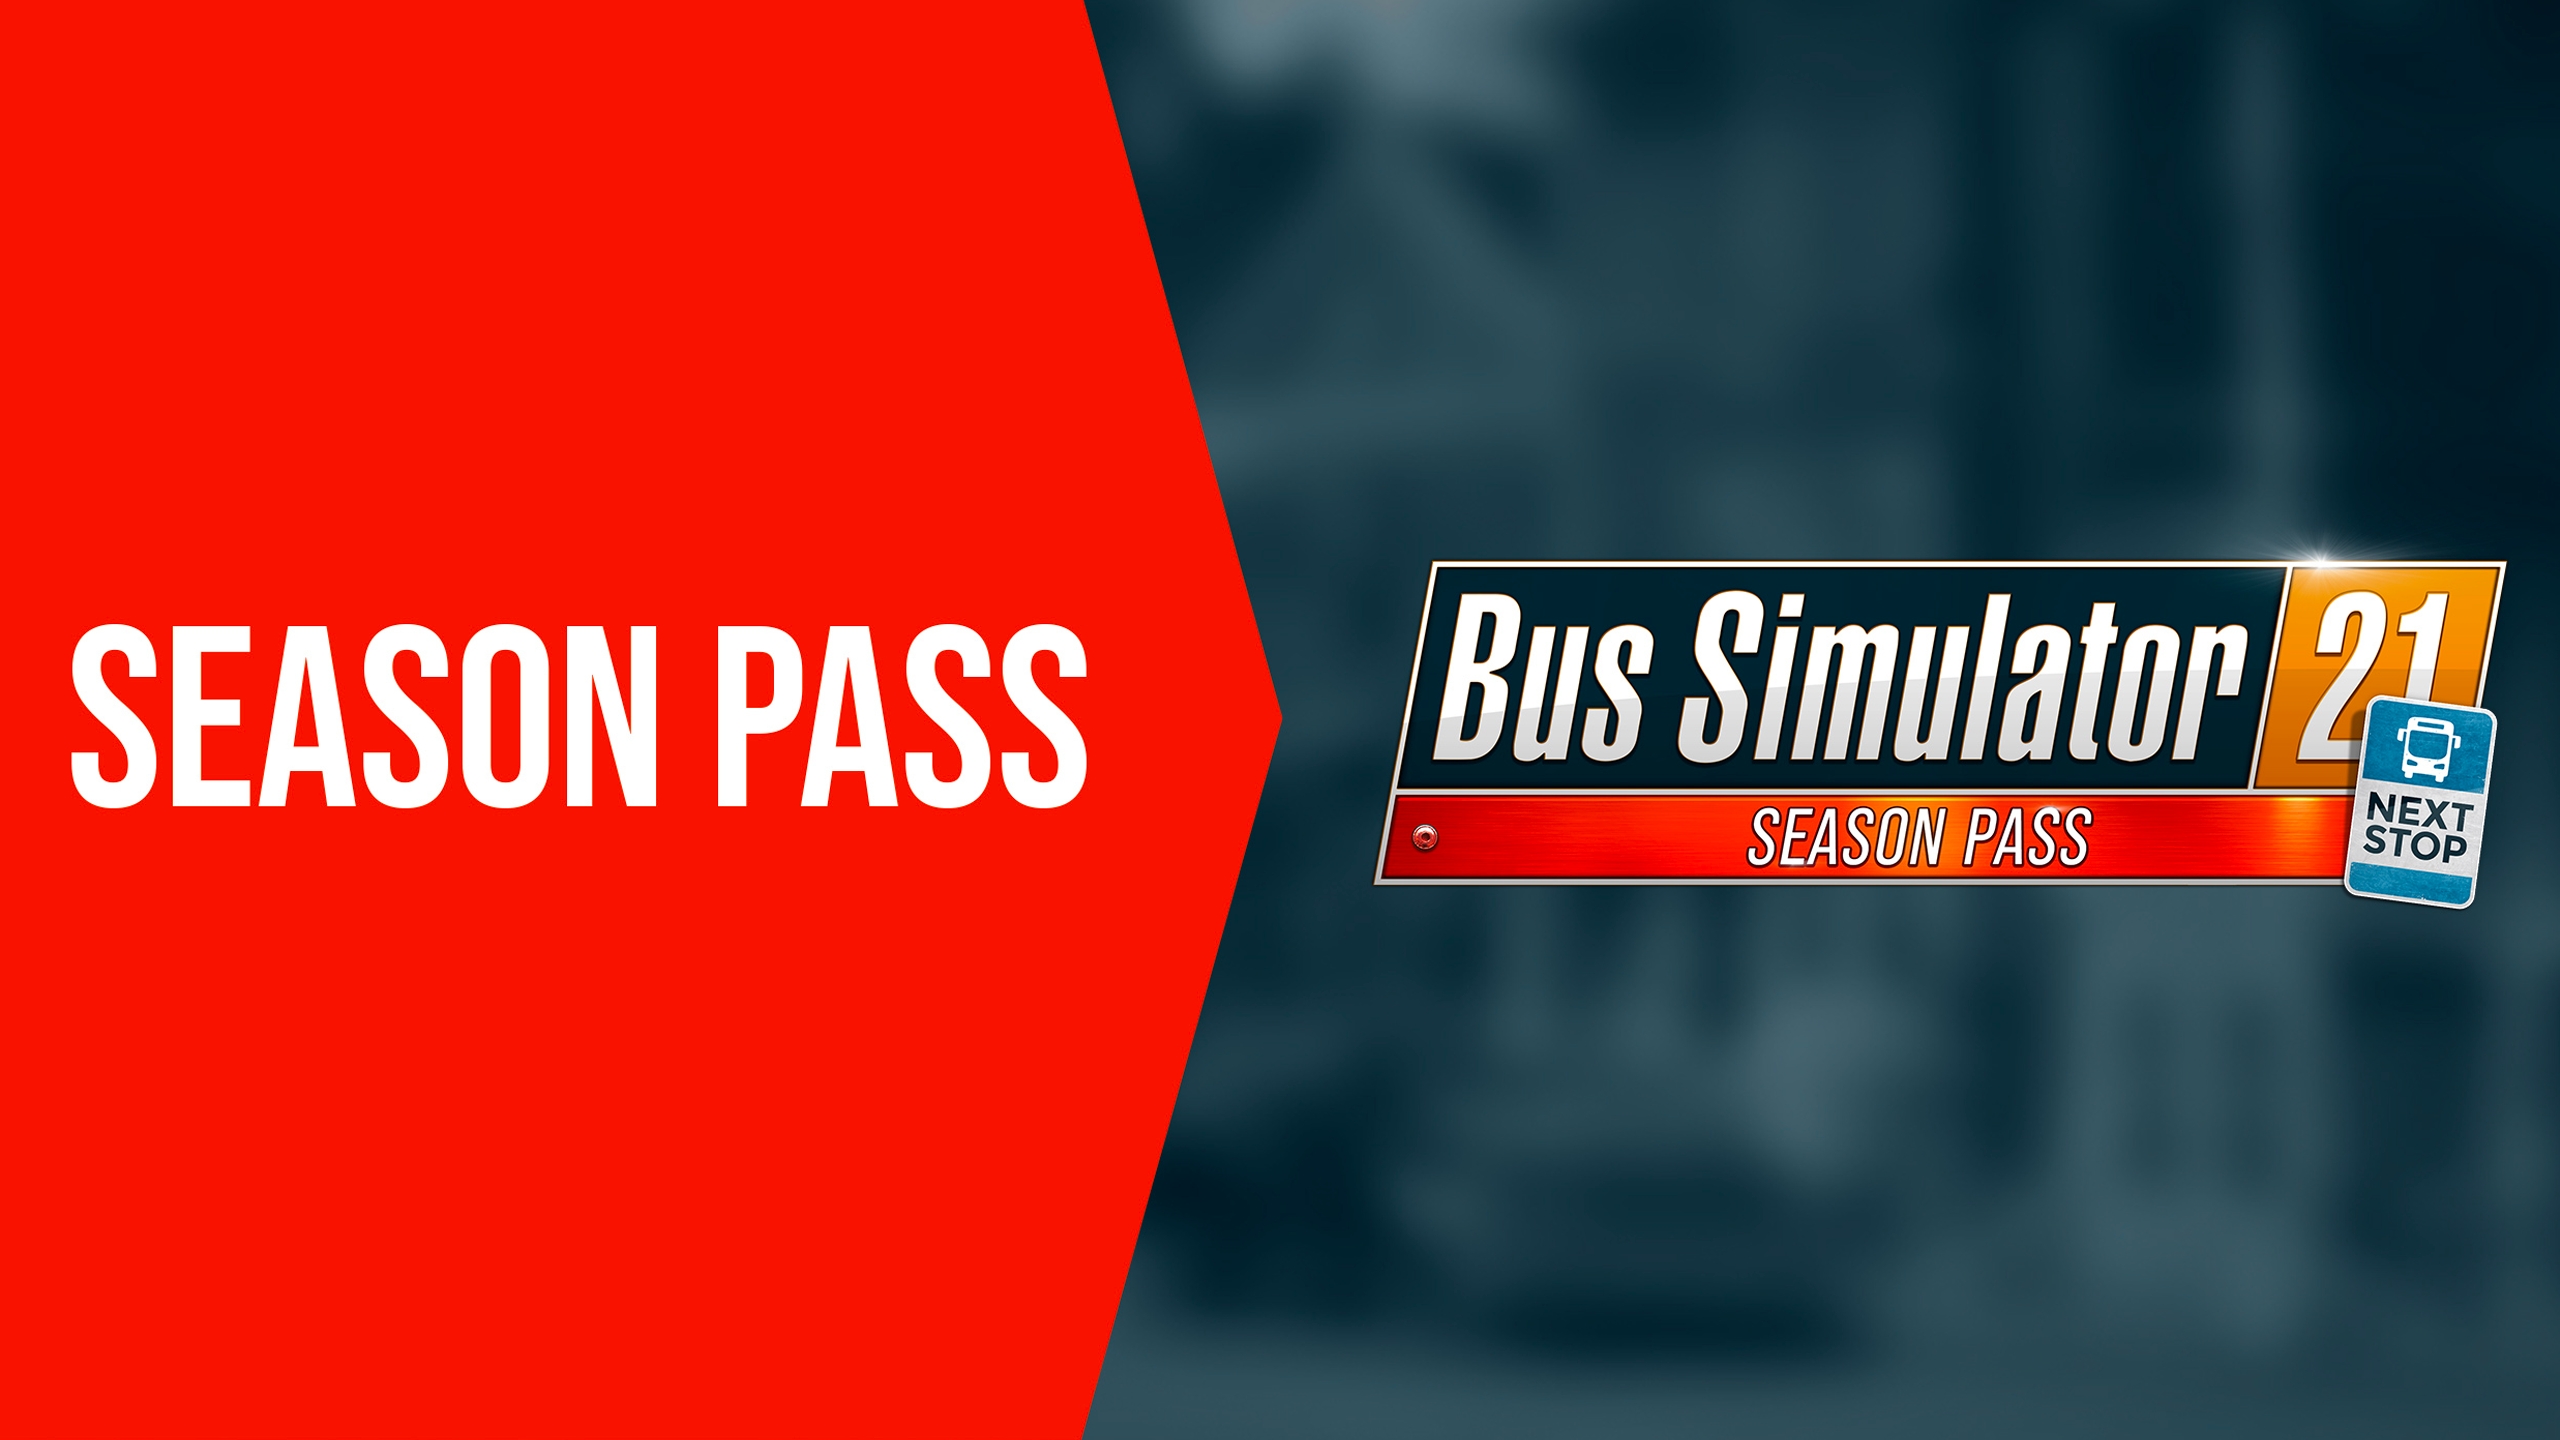 Buy Bus Steam Next Season 21 Simulator Pass - Stop